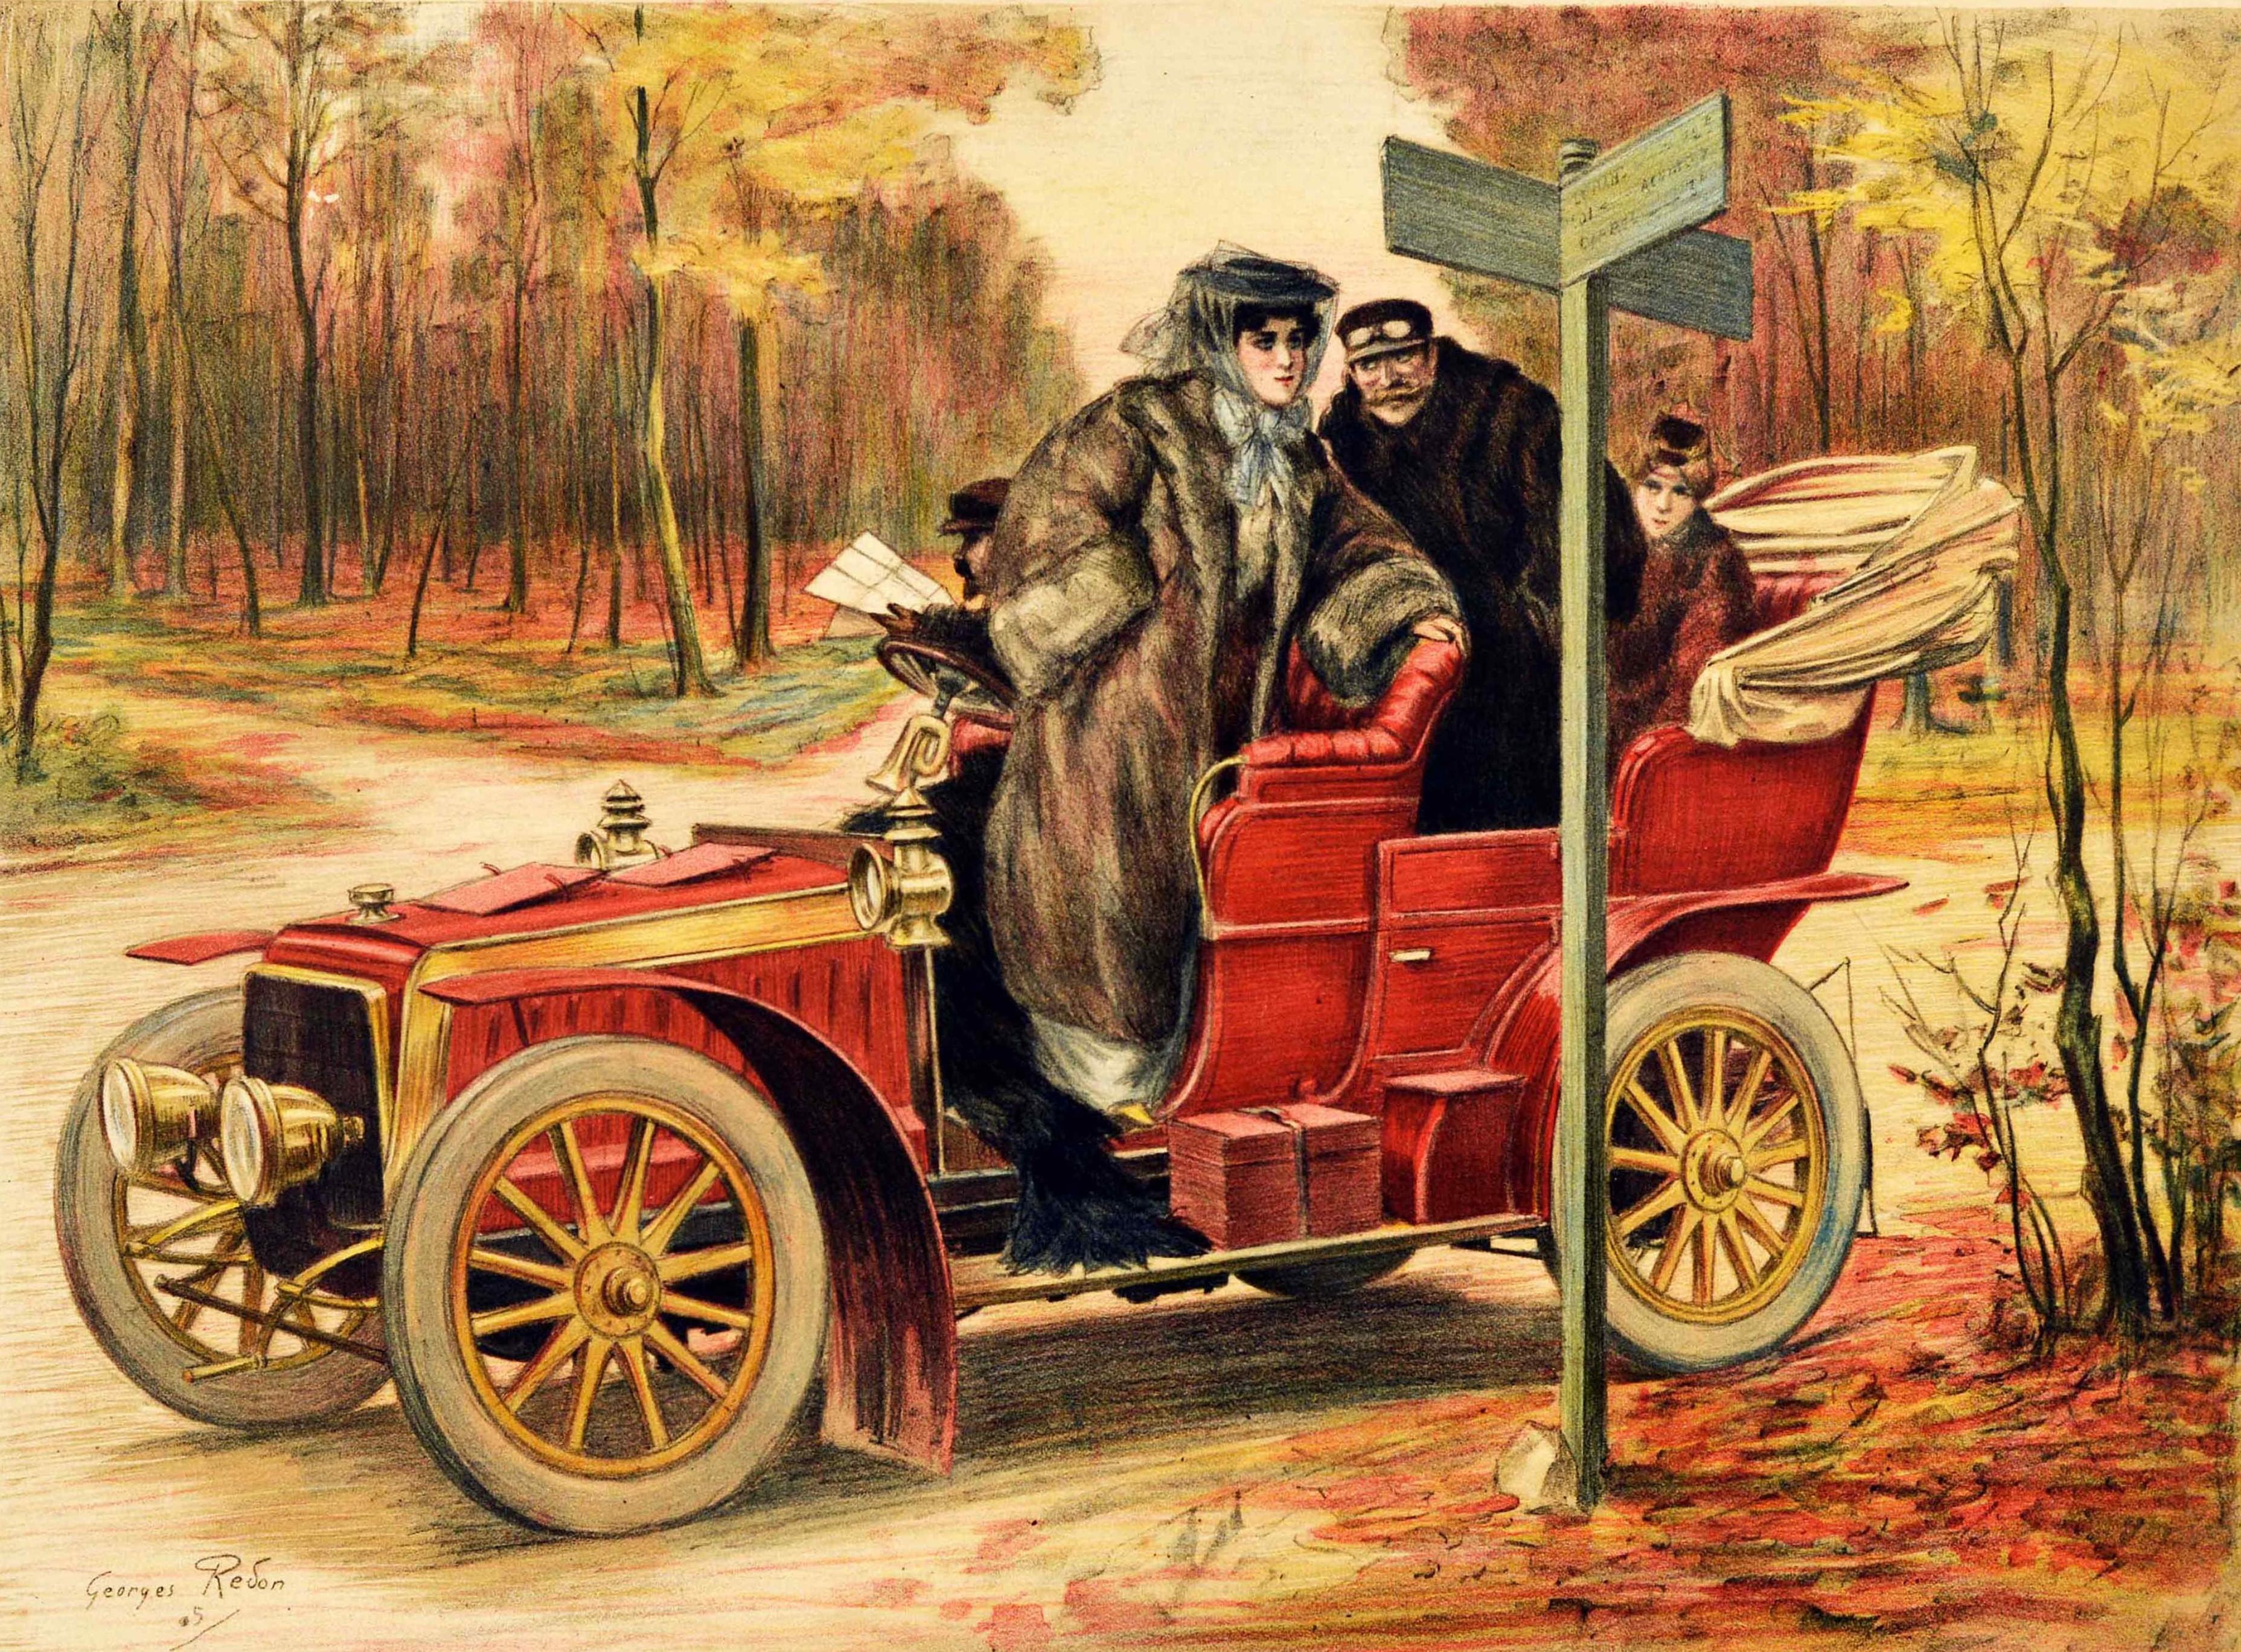 Original antikes Reiseplakat - Le Tourisme - mit einem atemberaubenden Gemälde des französischen Künstlers Georges Redon (1869-1943) aus dem frühen 20. Jahrhundert, das eine Dame in einem Pelzmantel und einem modischen, mit einem Schal um den Kopf